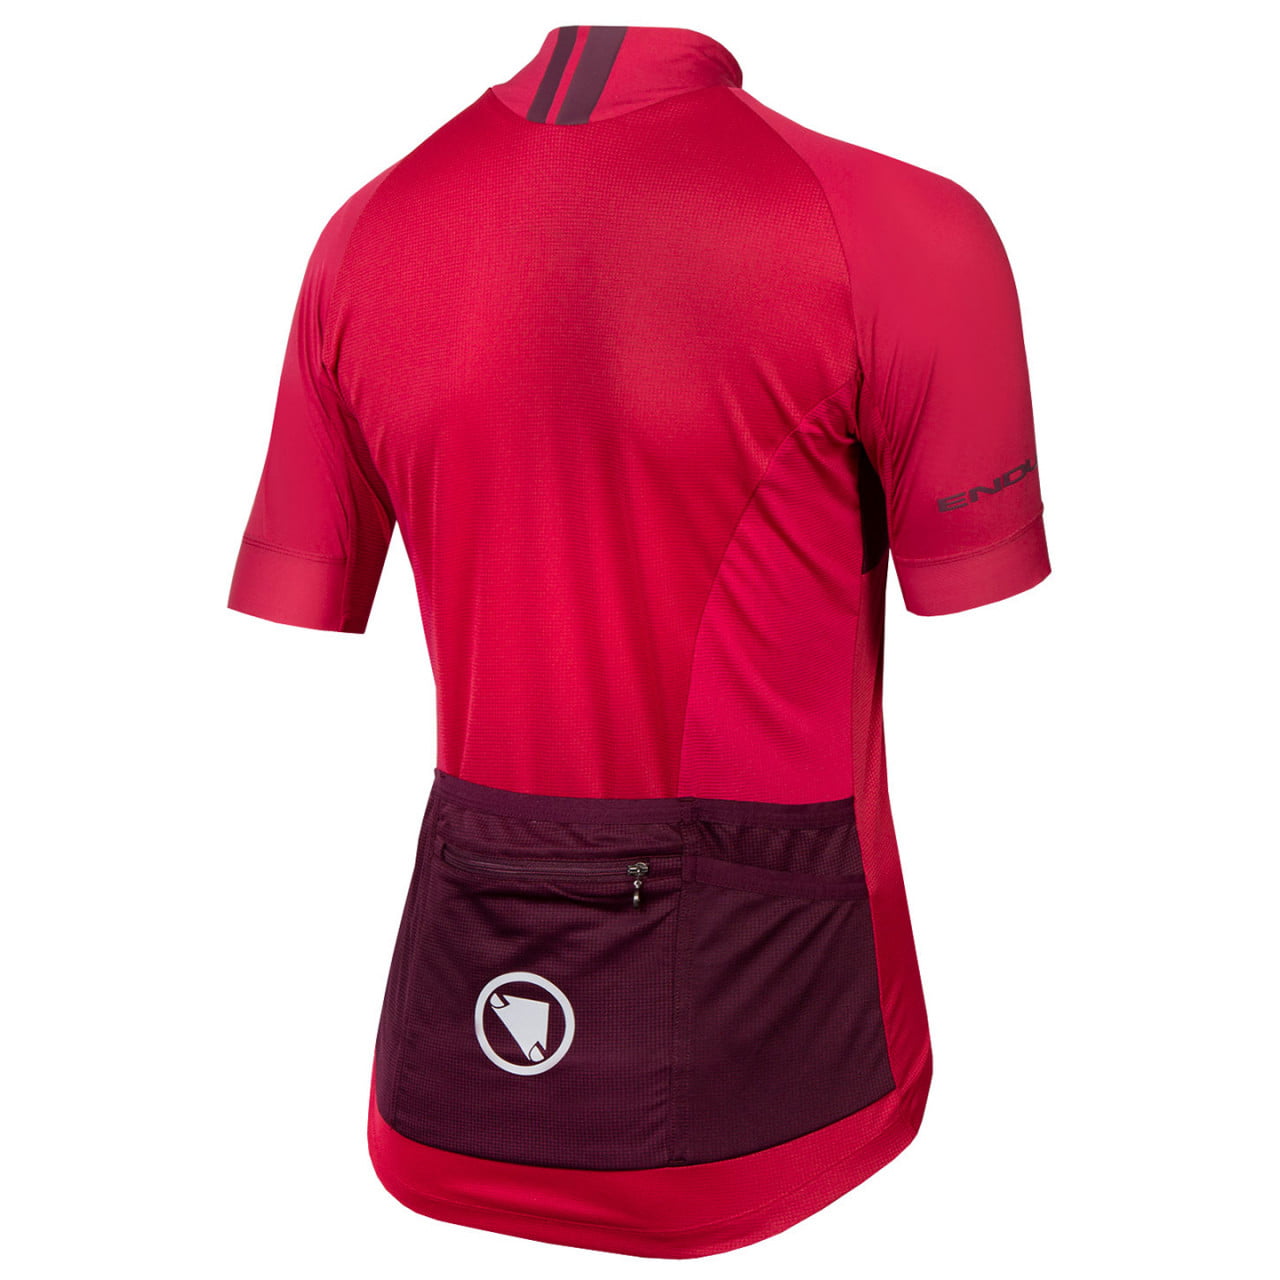 FS260-Pro II Women's Short Sleeve Jersey